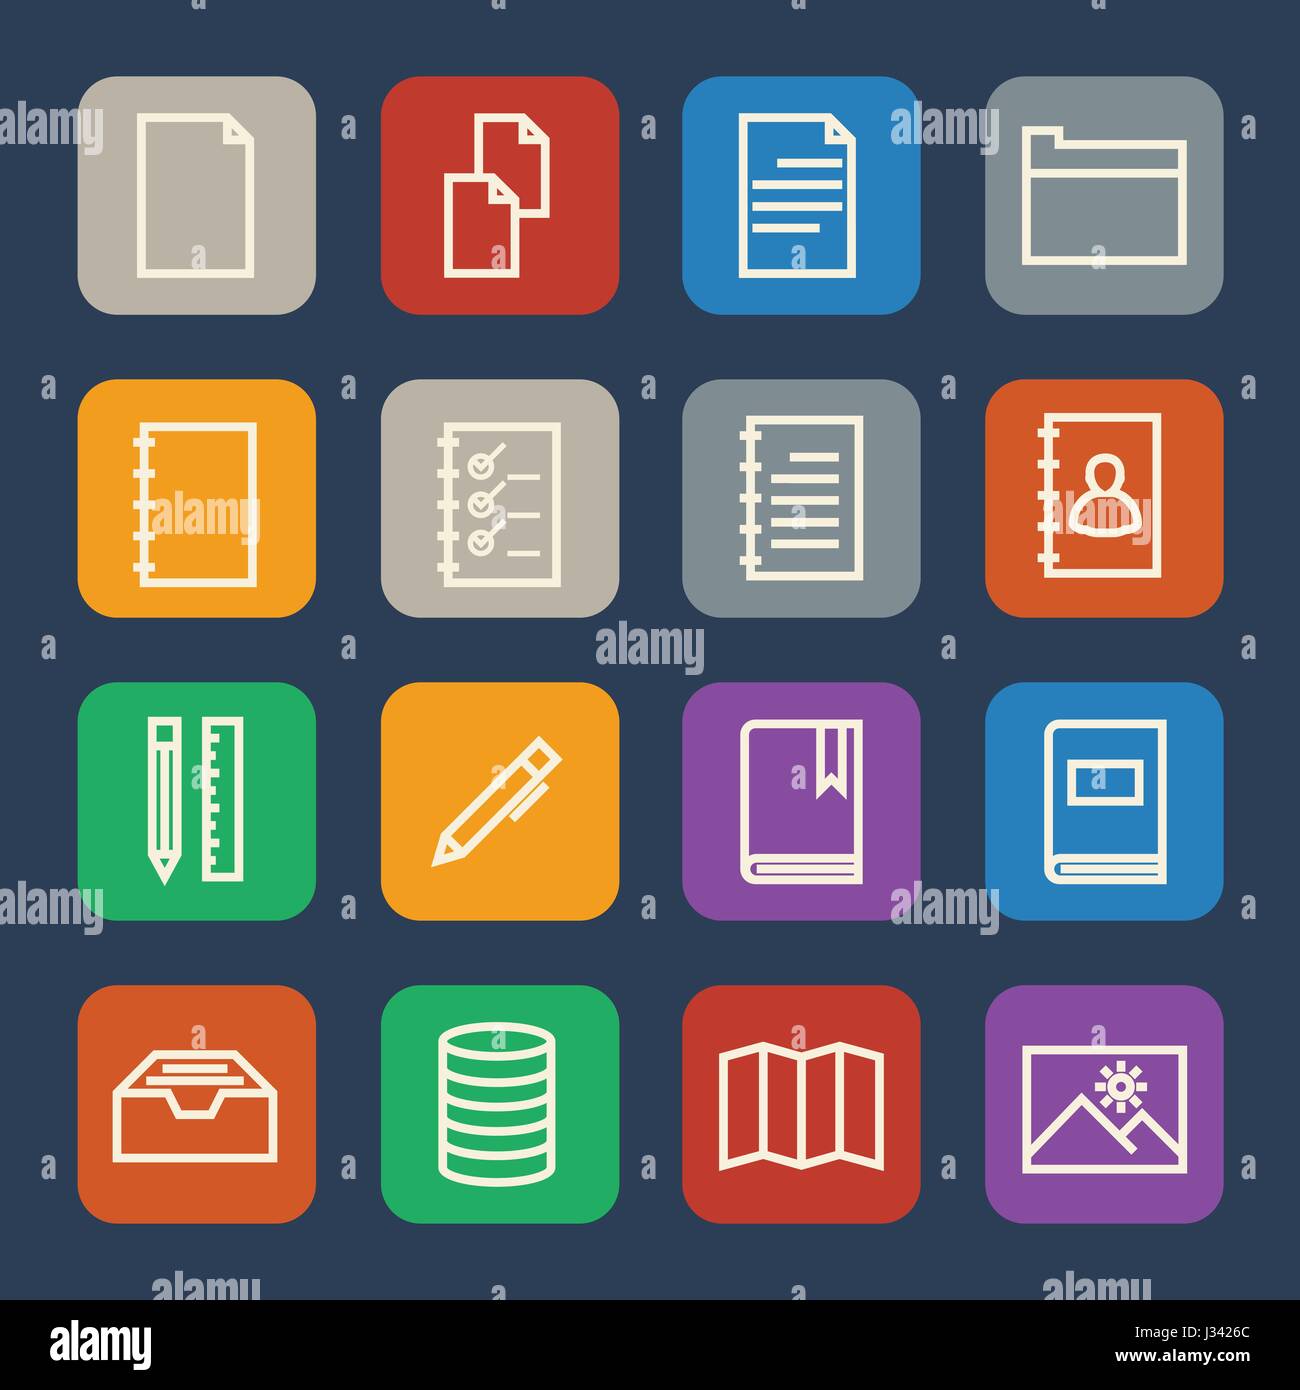 Einfache Dokumente und Bibliothek Icons set für Website und Mobile Anwendungen. Flaches Design. Stock Vektor